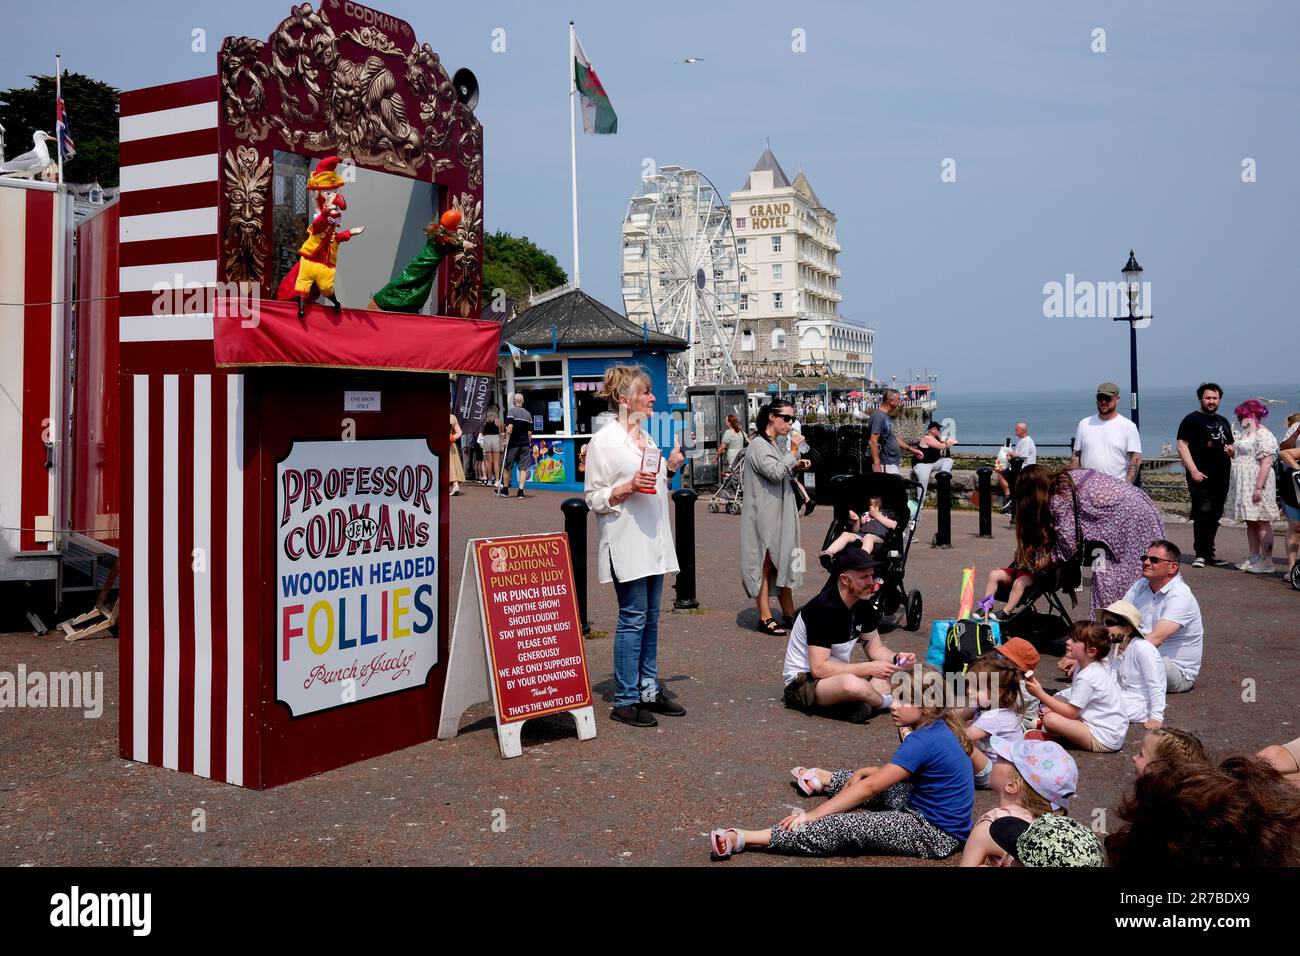 Kinder sehen Professor Codmans traditionelle Punch- und Judy-Show auf der Llandudno Promenade. Wales, Großbritannien, GB Urlaubsunterhaltung Stockfoto